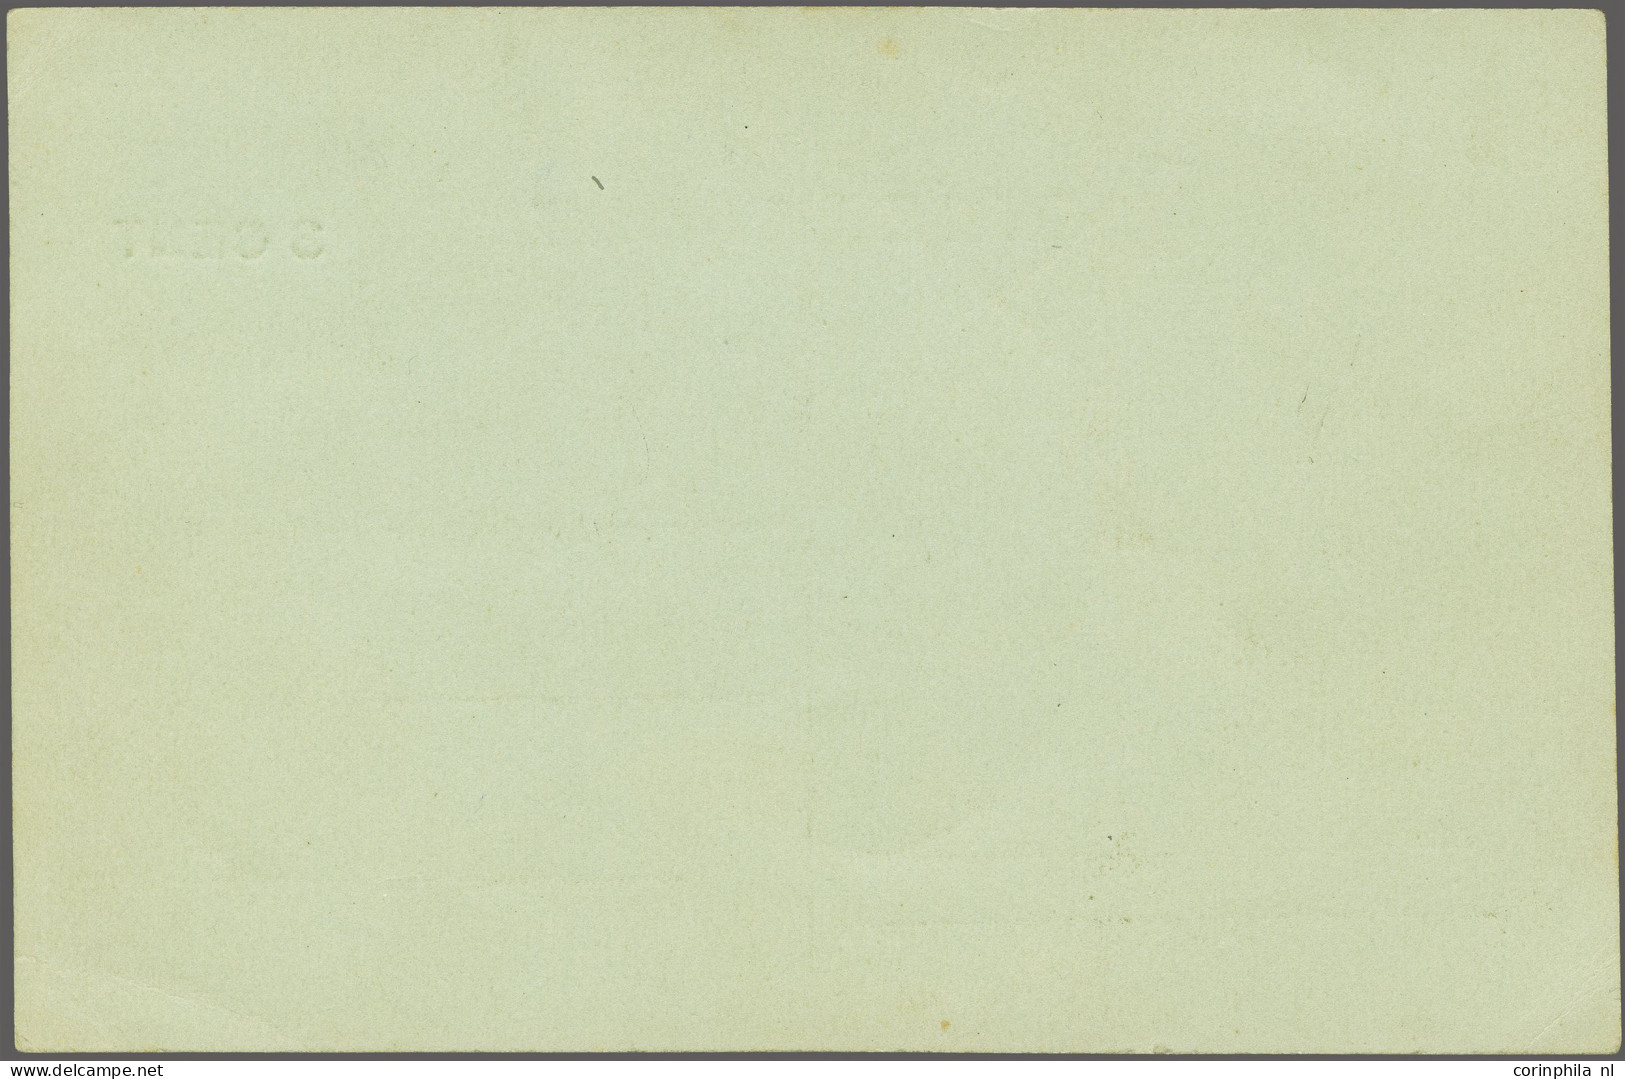 Cover 3 Cent Opdruk Op 2½ Cent Groen Op Ongebruikte Briefkaart. In 1916 Werd Het Briefkaart Tarief Verhoogd Van 2½ Cent  - Non Classés